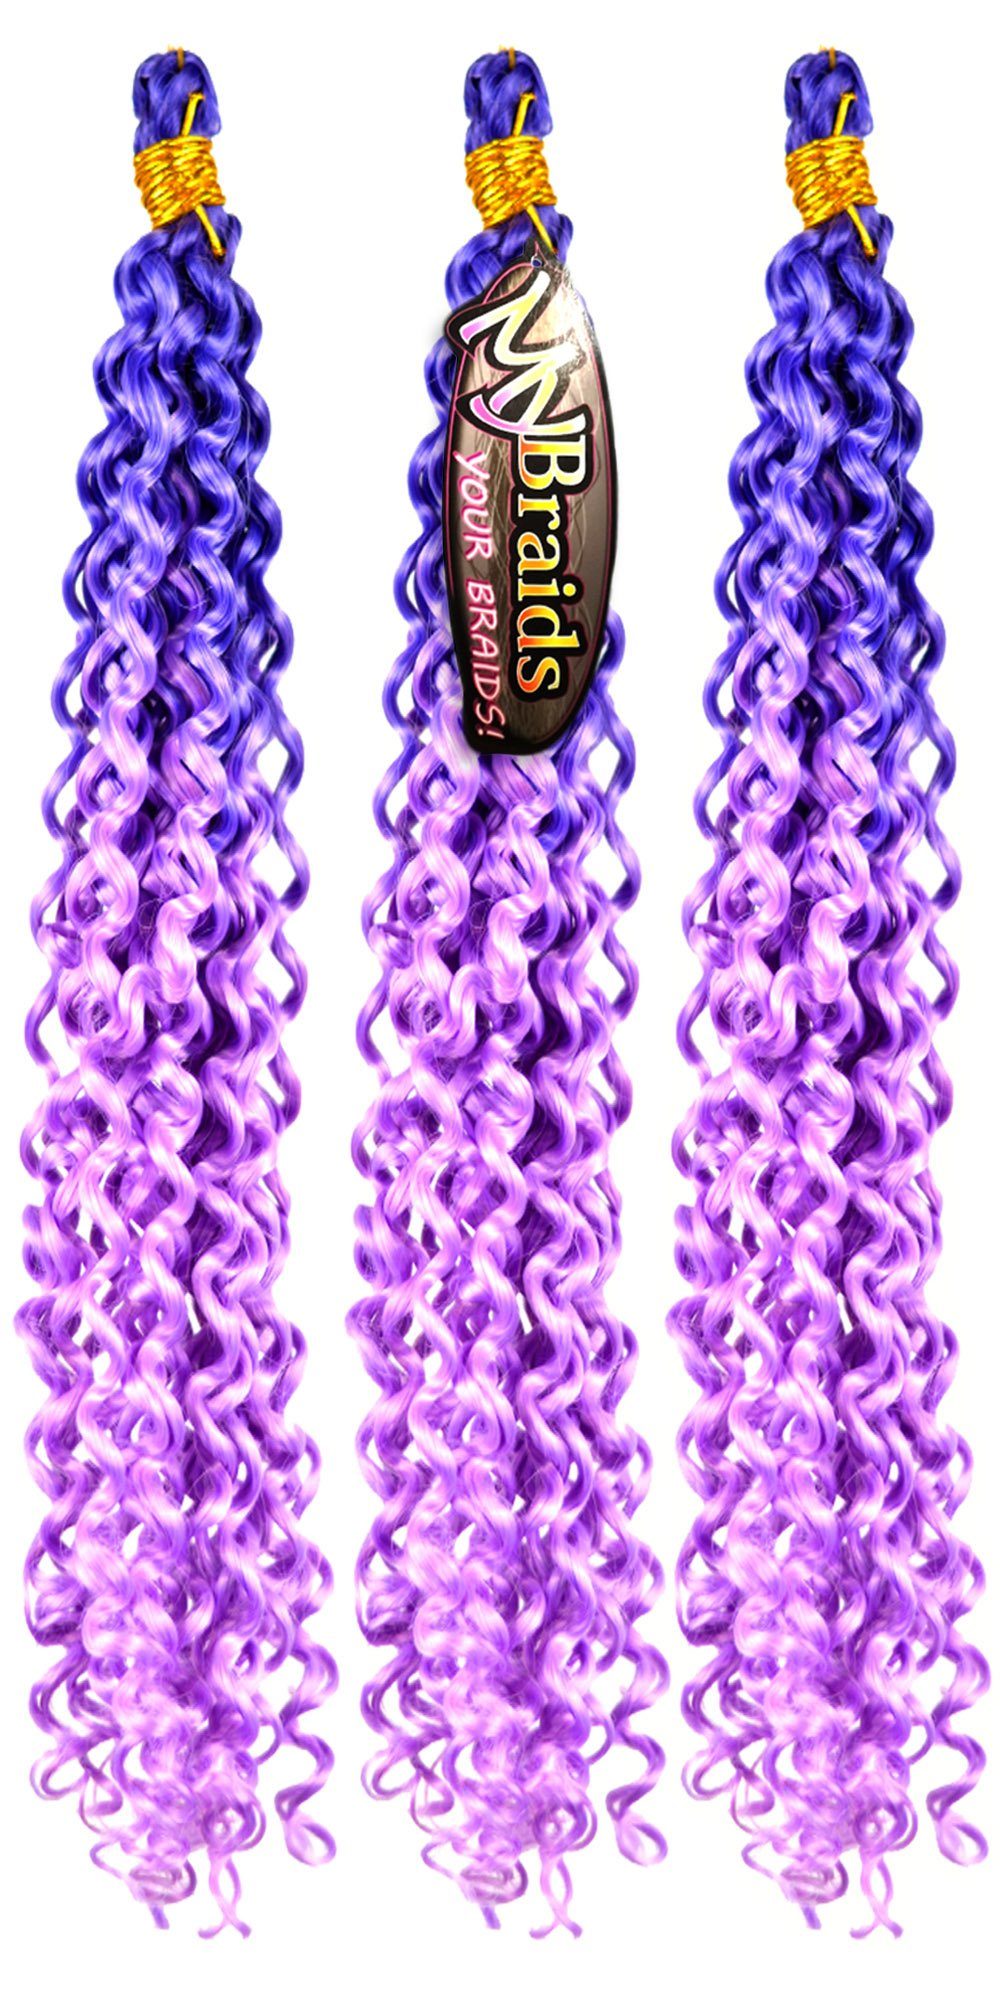 MyBraids YOUR BRAIDS! Zöpfe Deep Braids 3er Flechthaar Pack Crochet Wellig Wave Blauviolett-Hellviolett 21-WS Ombre Kunsthaar-Extension